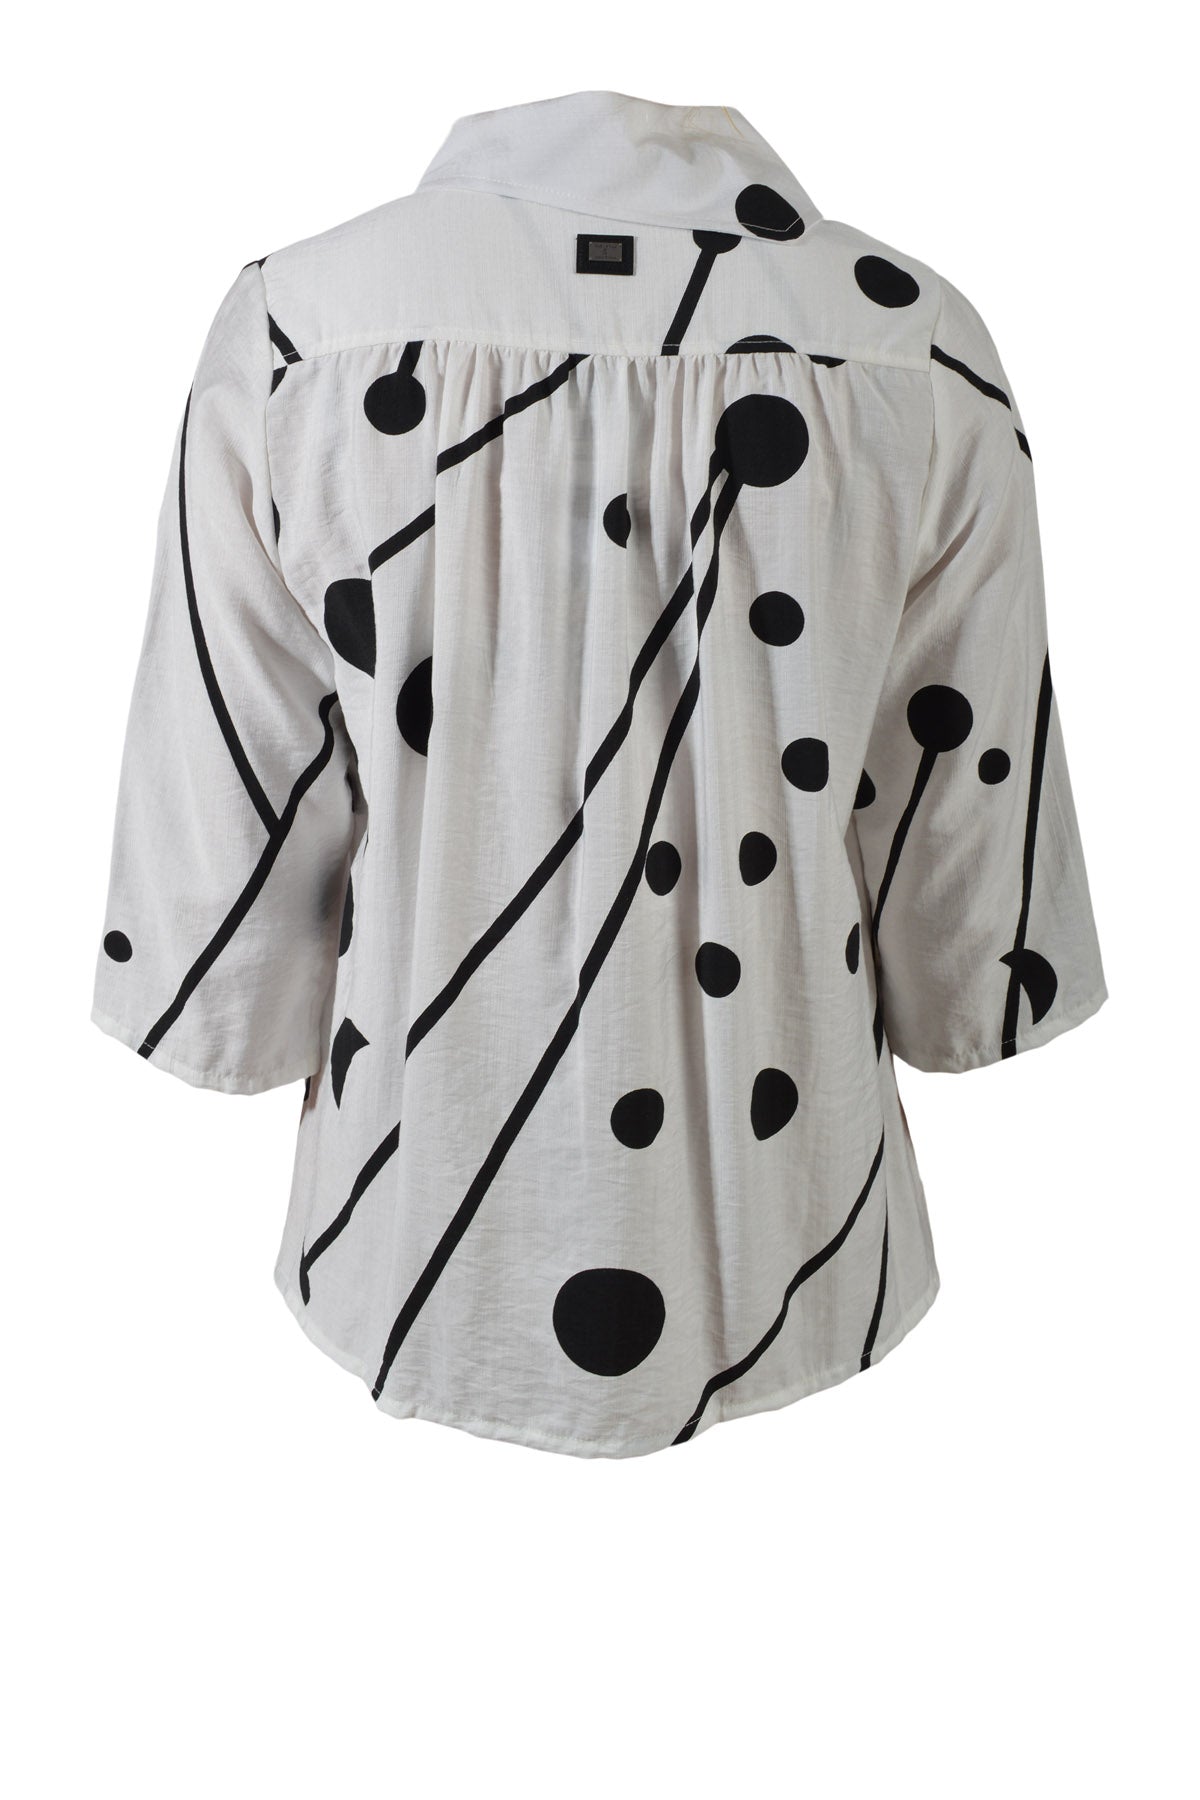 E Avantgarde skjorte/jakke 14140-1, White